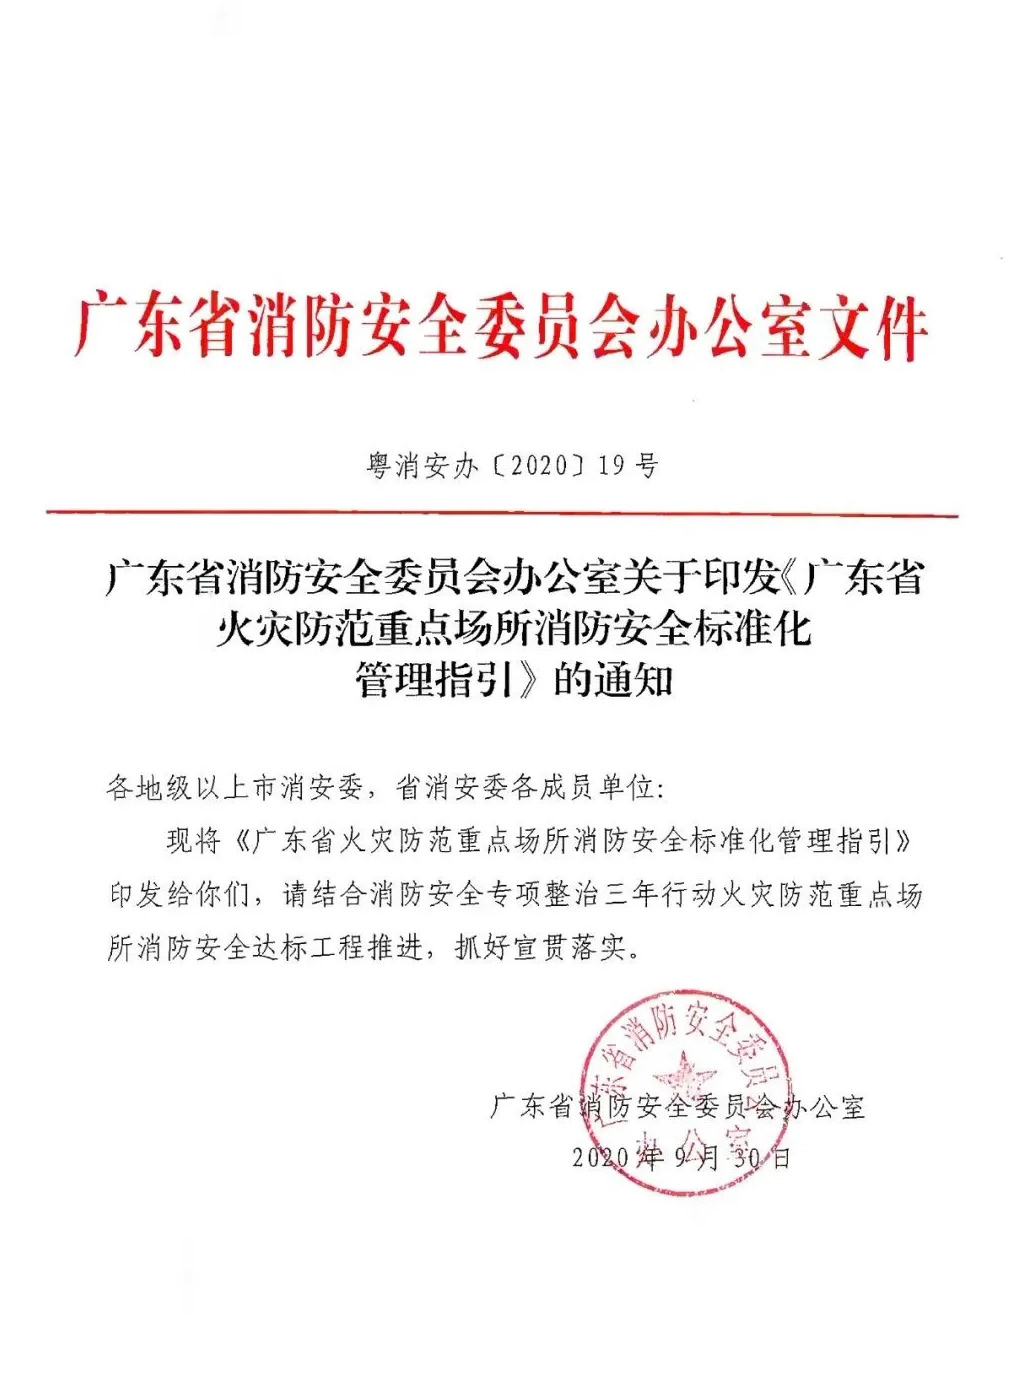 广东省火灾防范重点场所消防安全标准化管理指引